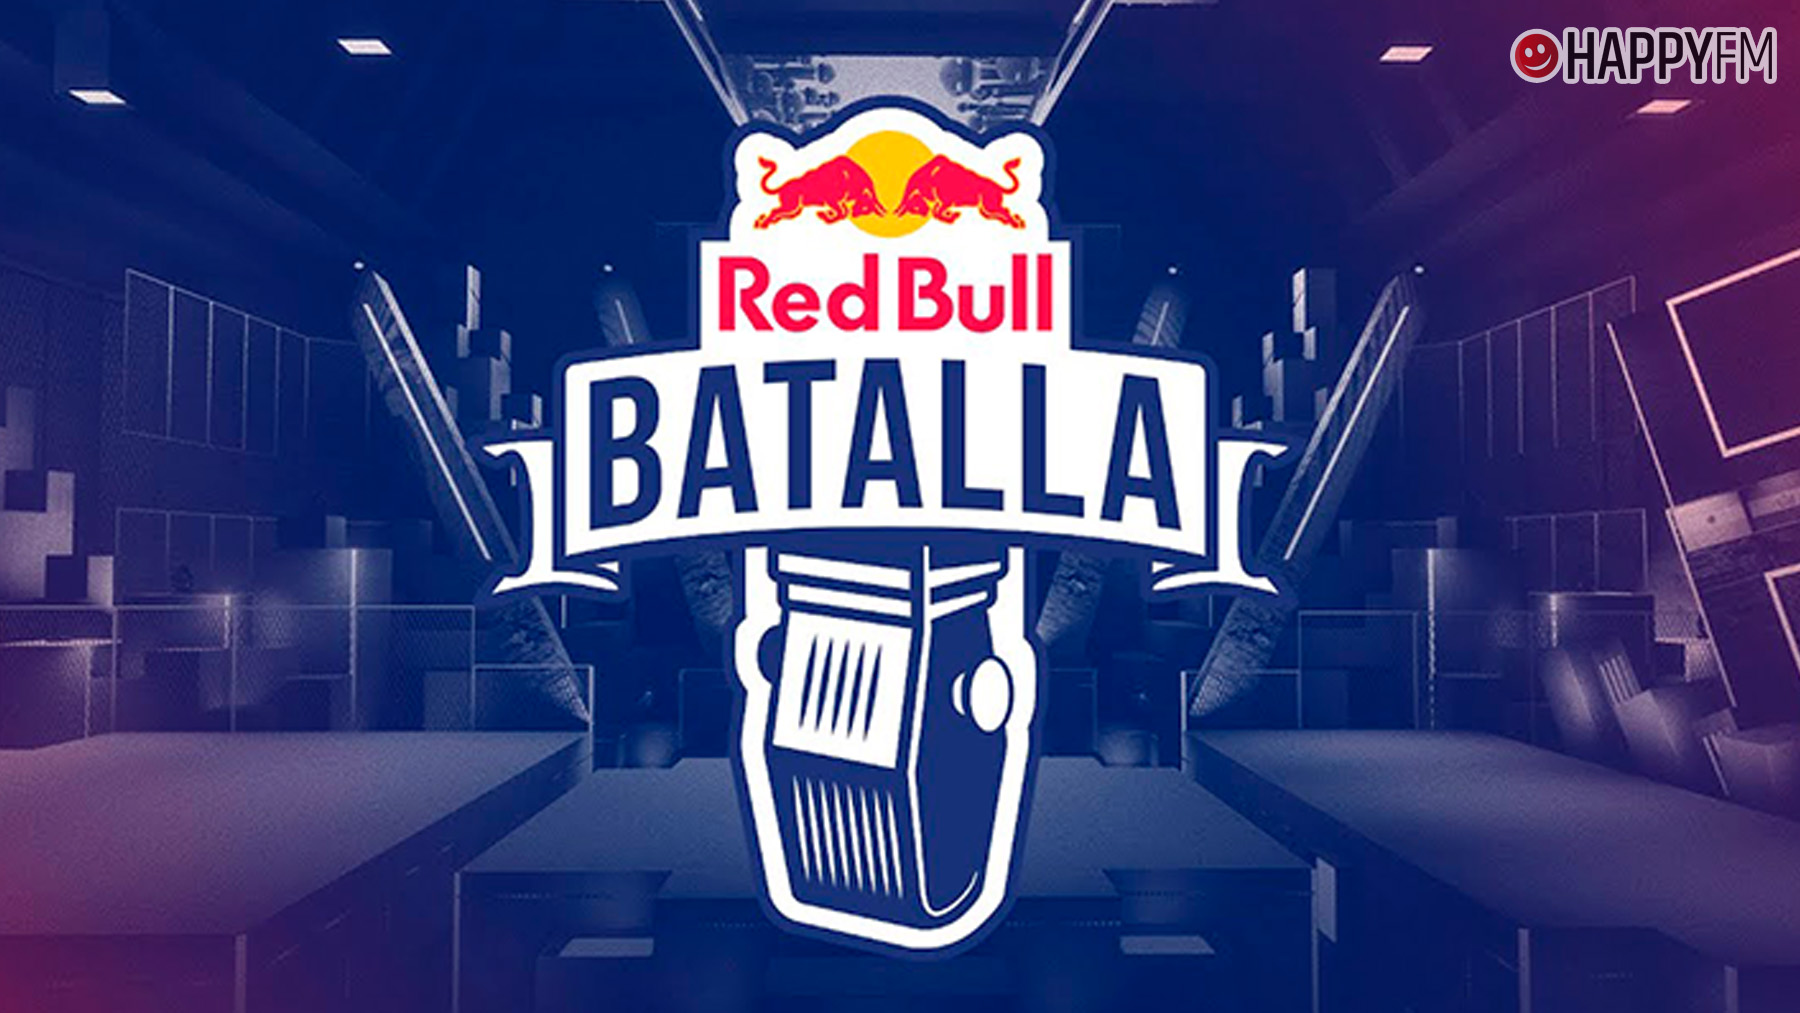 Red Bull Batalla 2022 fechas, dónde se celebra y cómo comprar las entradas